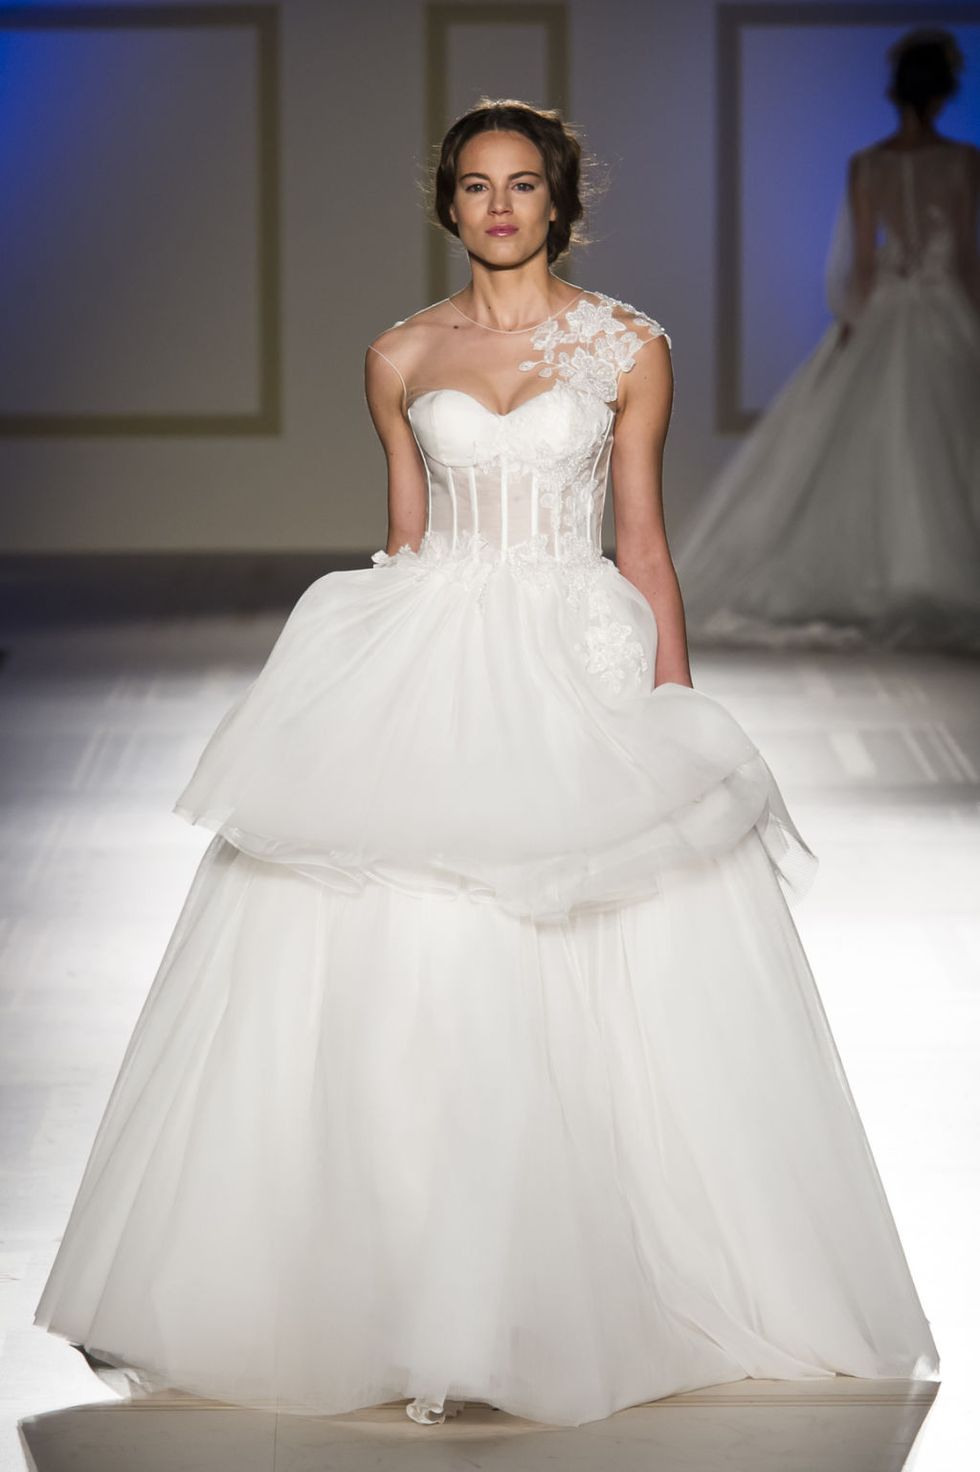 Gown, Wedding dress, Fashion model, Clothing, Dress, Bridal clothing, Bridal party dress, Fashion, Shoulder, Bride, 